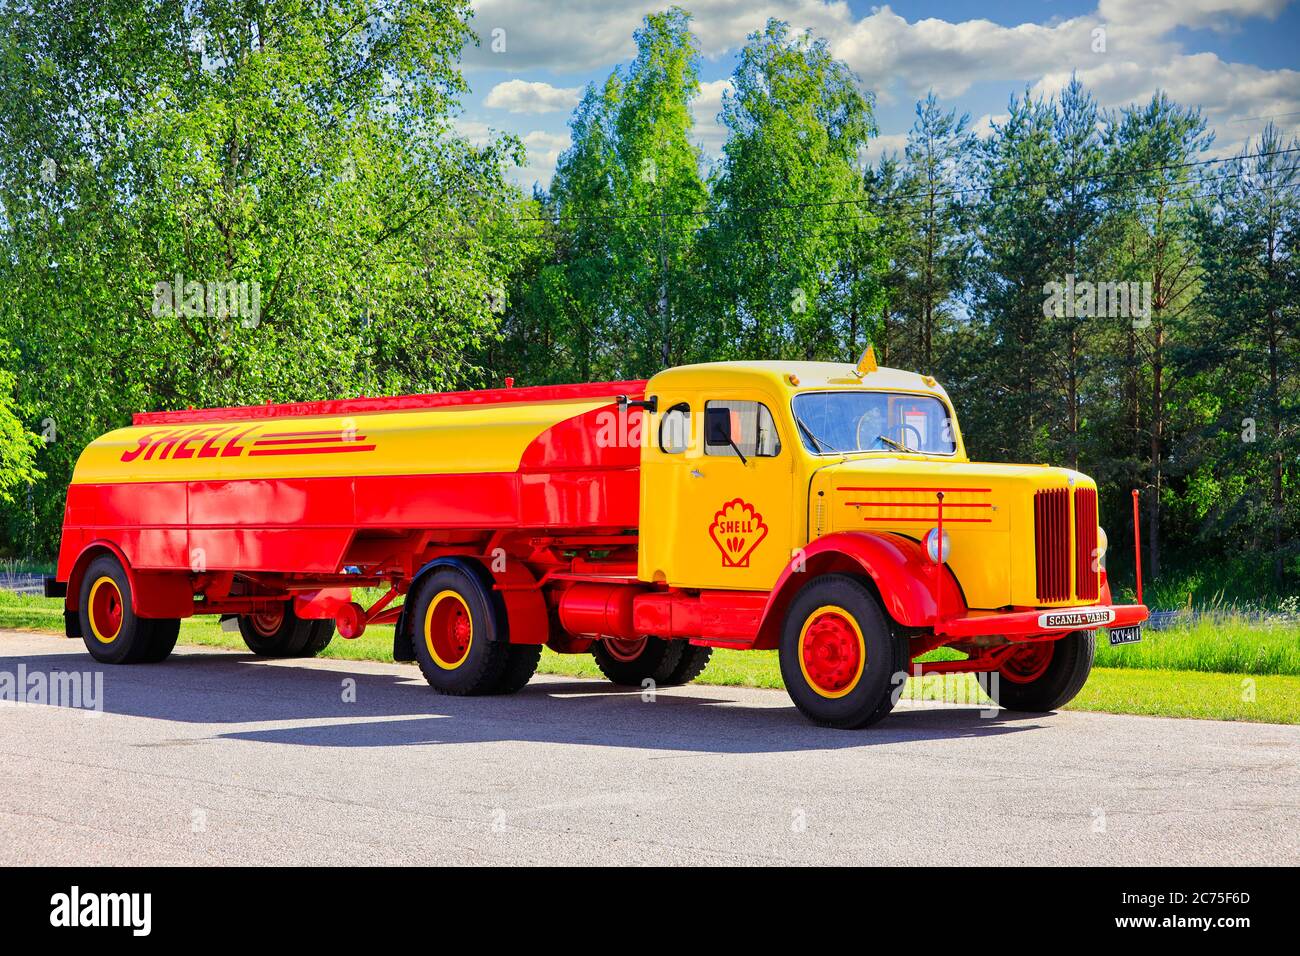 Vintage Scania-Vabis Shell camion-citerne à combustible année 1952 garé sur une cour un jour ensoleillé de l'été. Salo, Finlande. 12 juin 2020. Banque D'Images